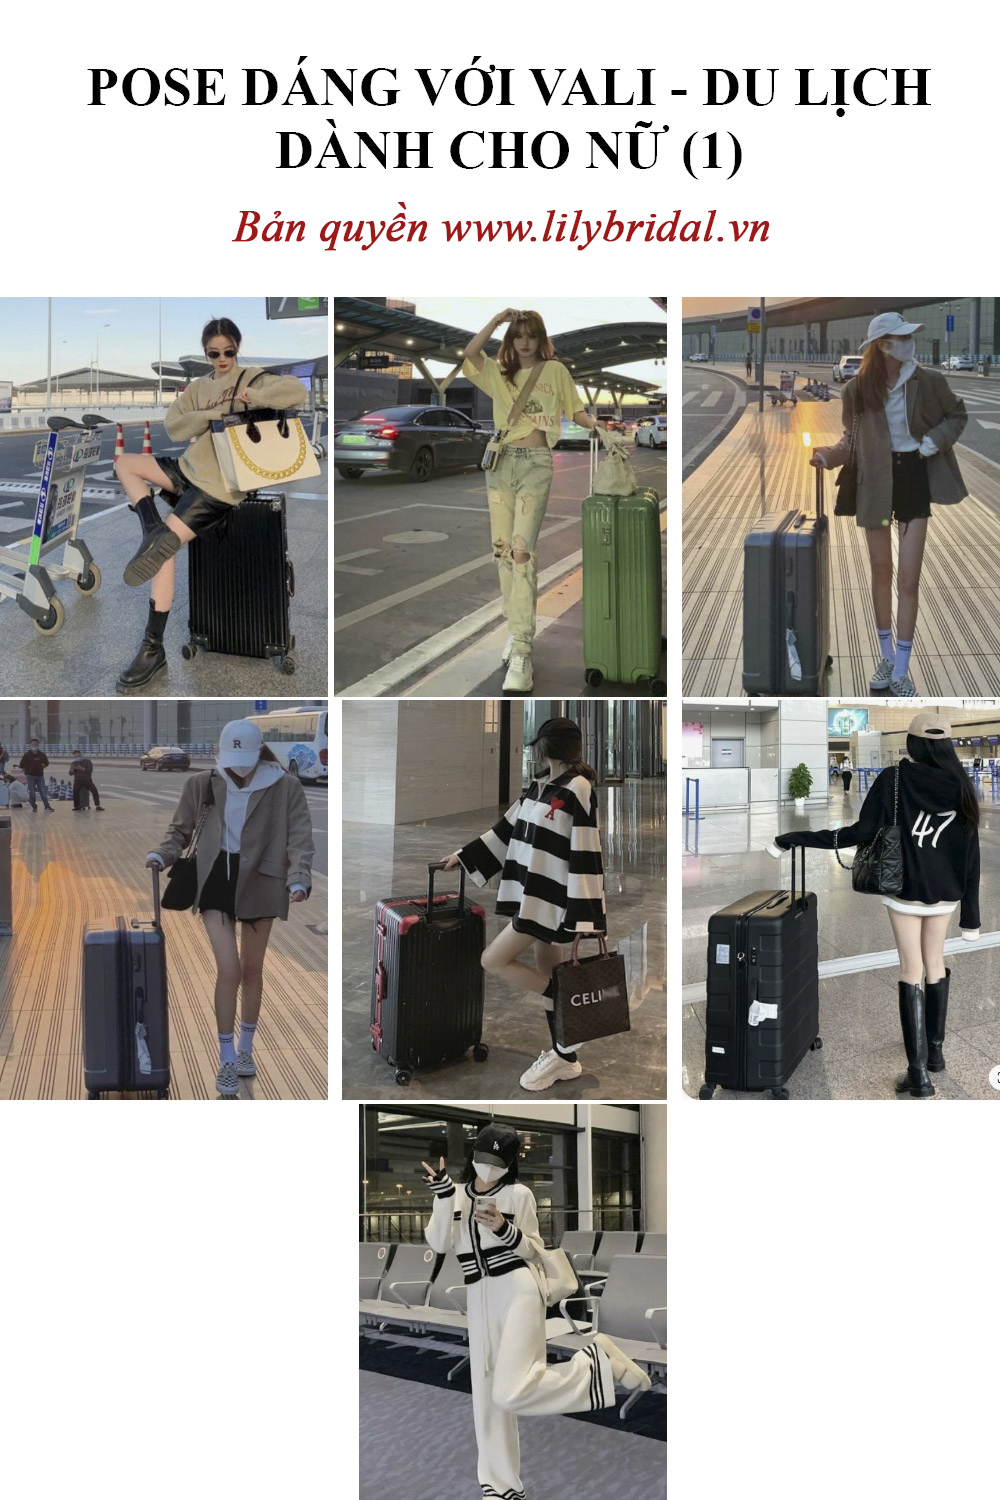 Tổng hợp các pose dáng xách vali đi du lịch dành cho nữ